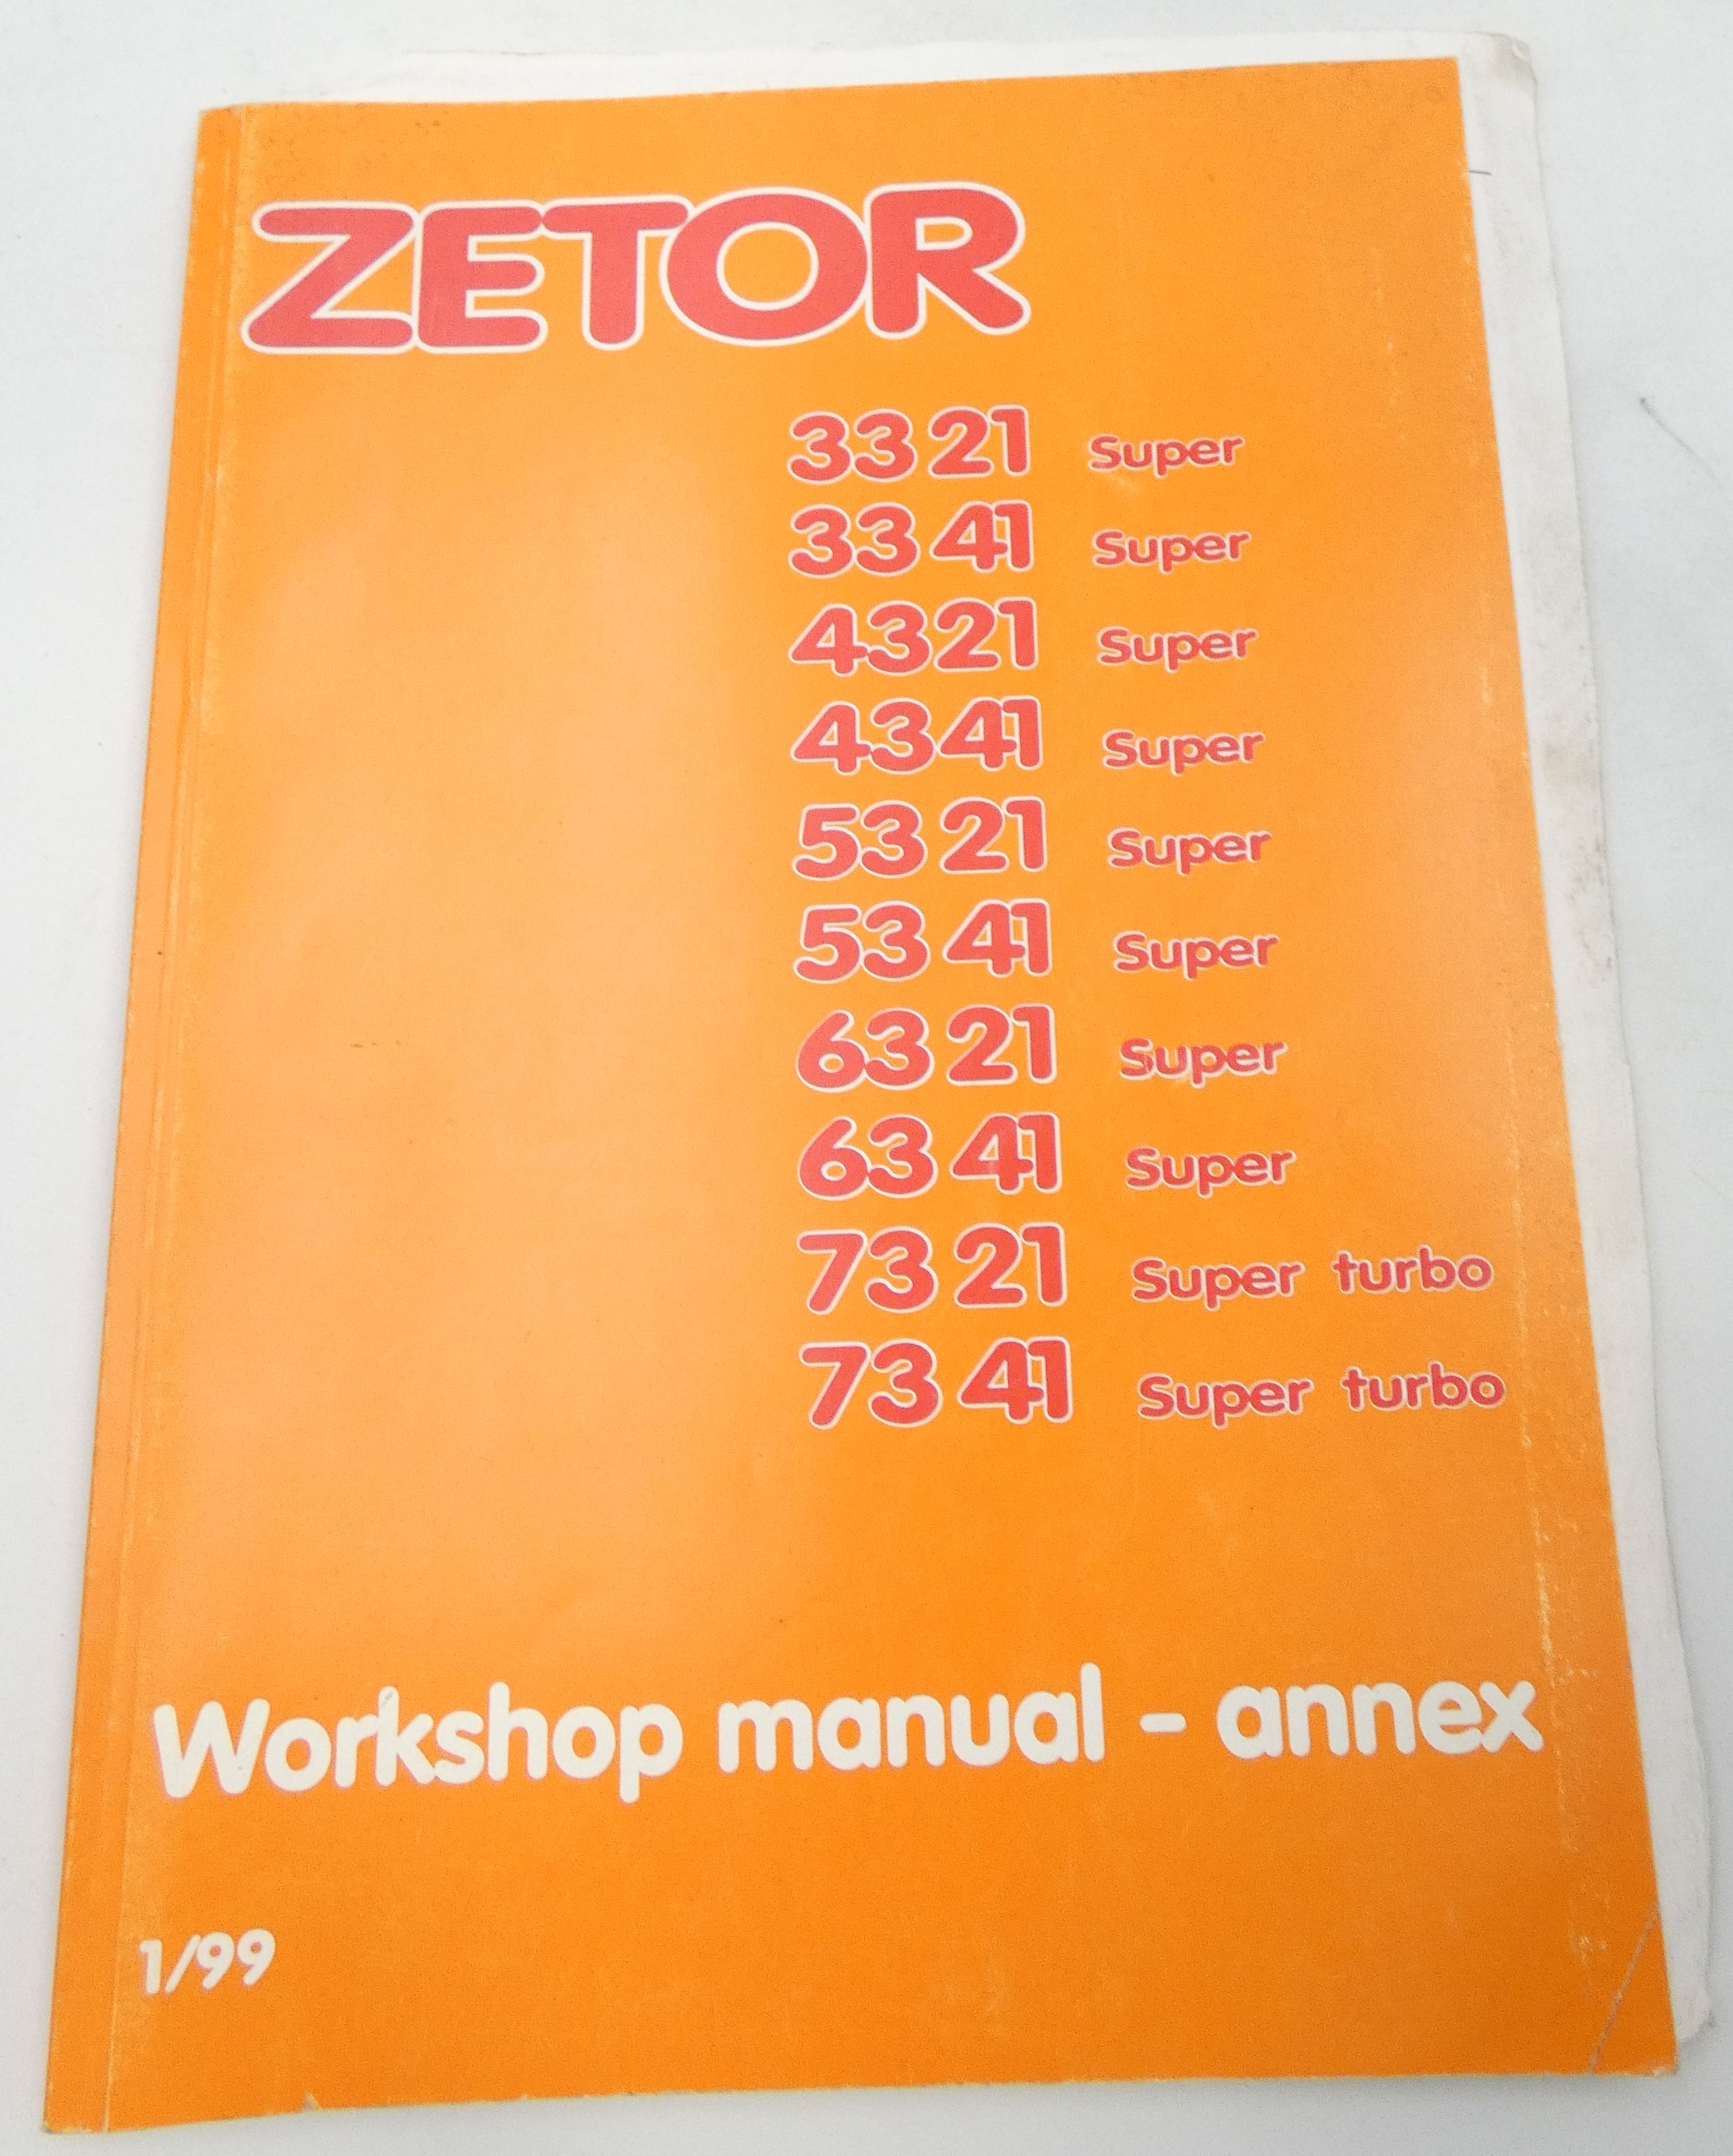 Zetor 3321, 3341, 4321, 4341, 5321, 5341, 6321, 6341 Super + 7321, 7341 Super Turbo workshop manual -annex